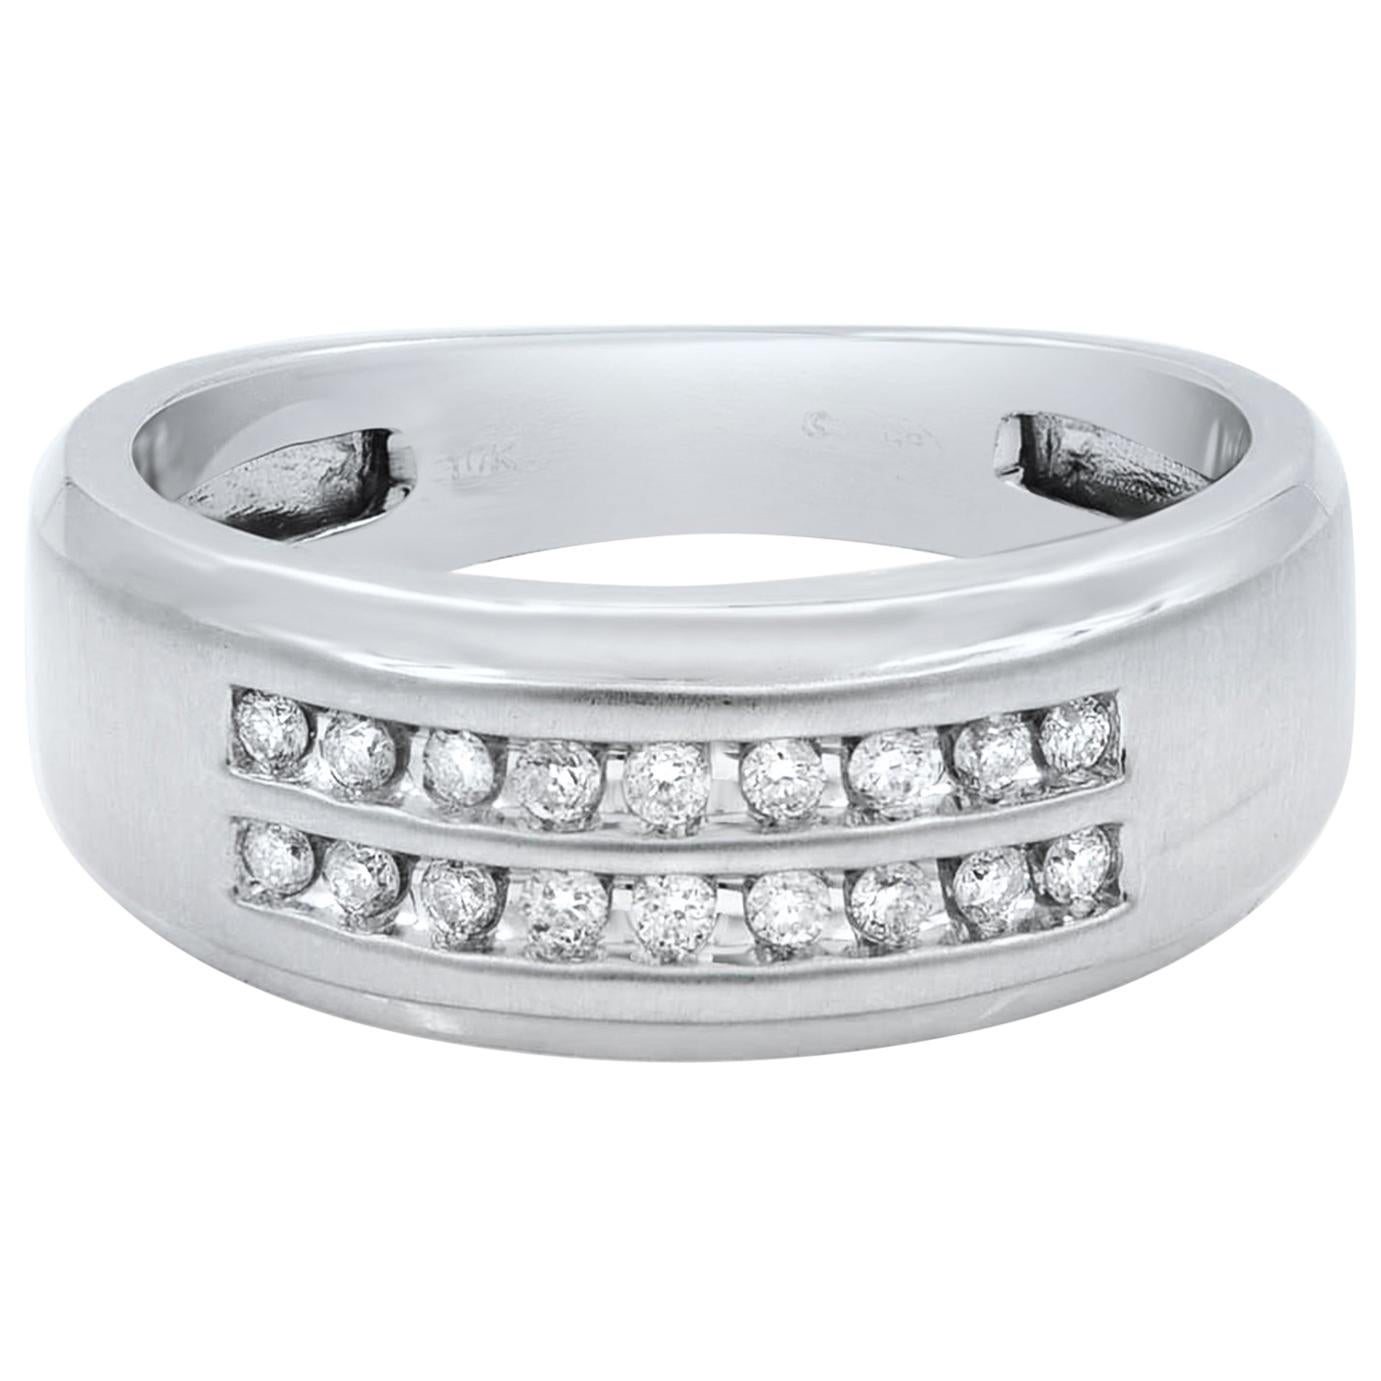 10 Karat White Gold Round Cut Diamond Wedding Band Ring for Men 0.36 Carat